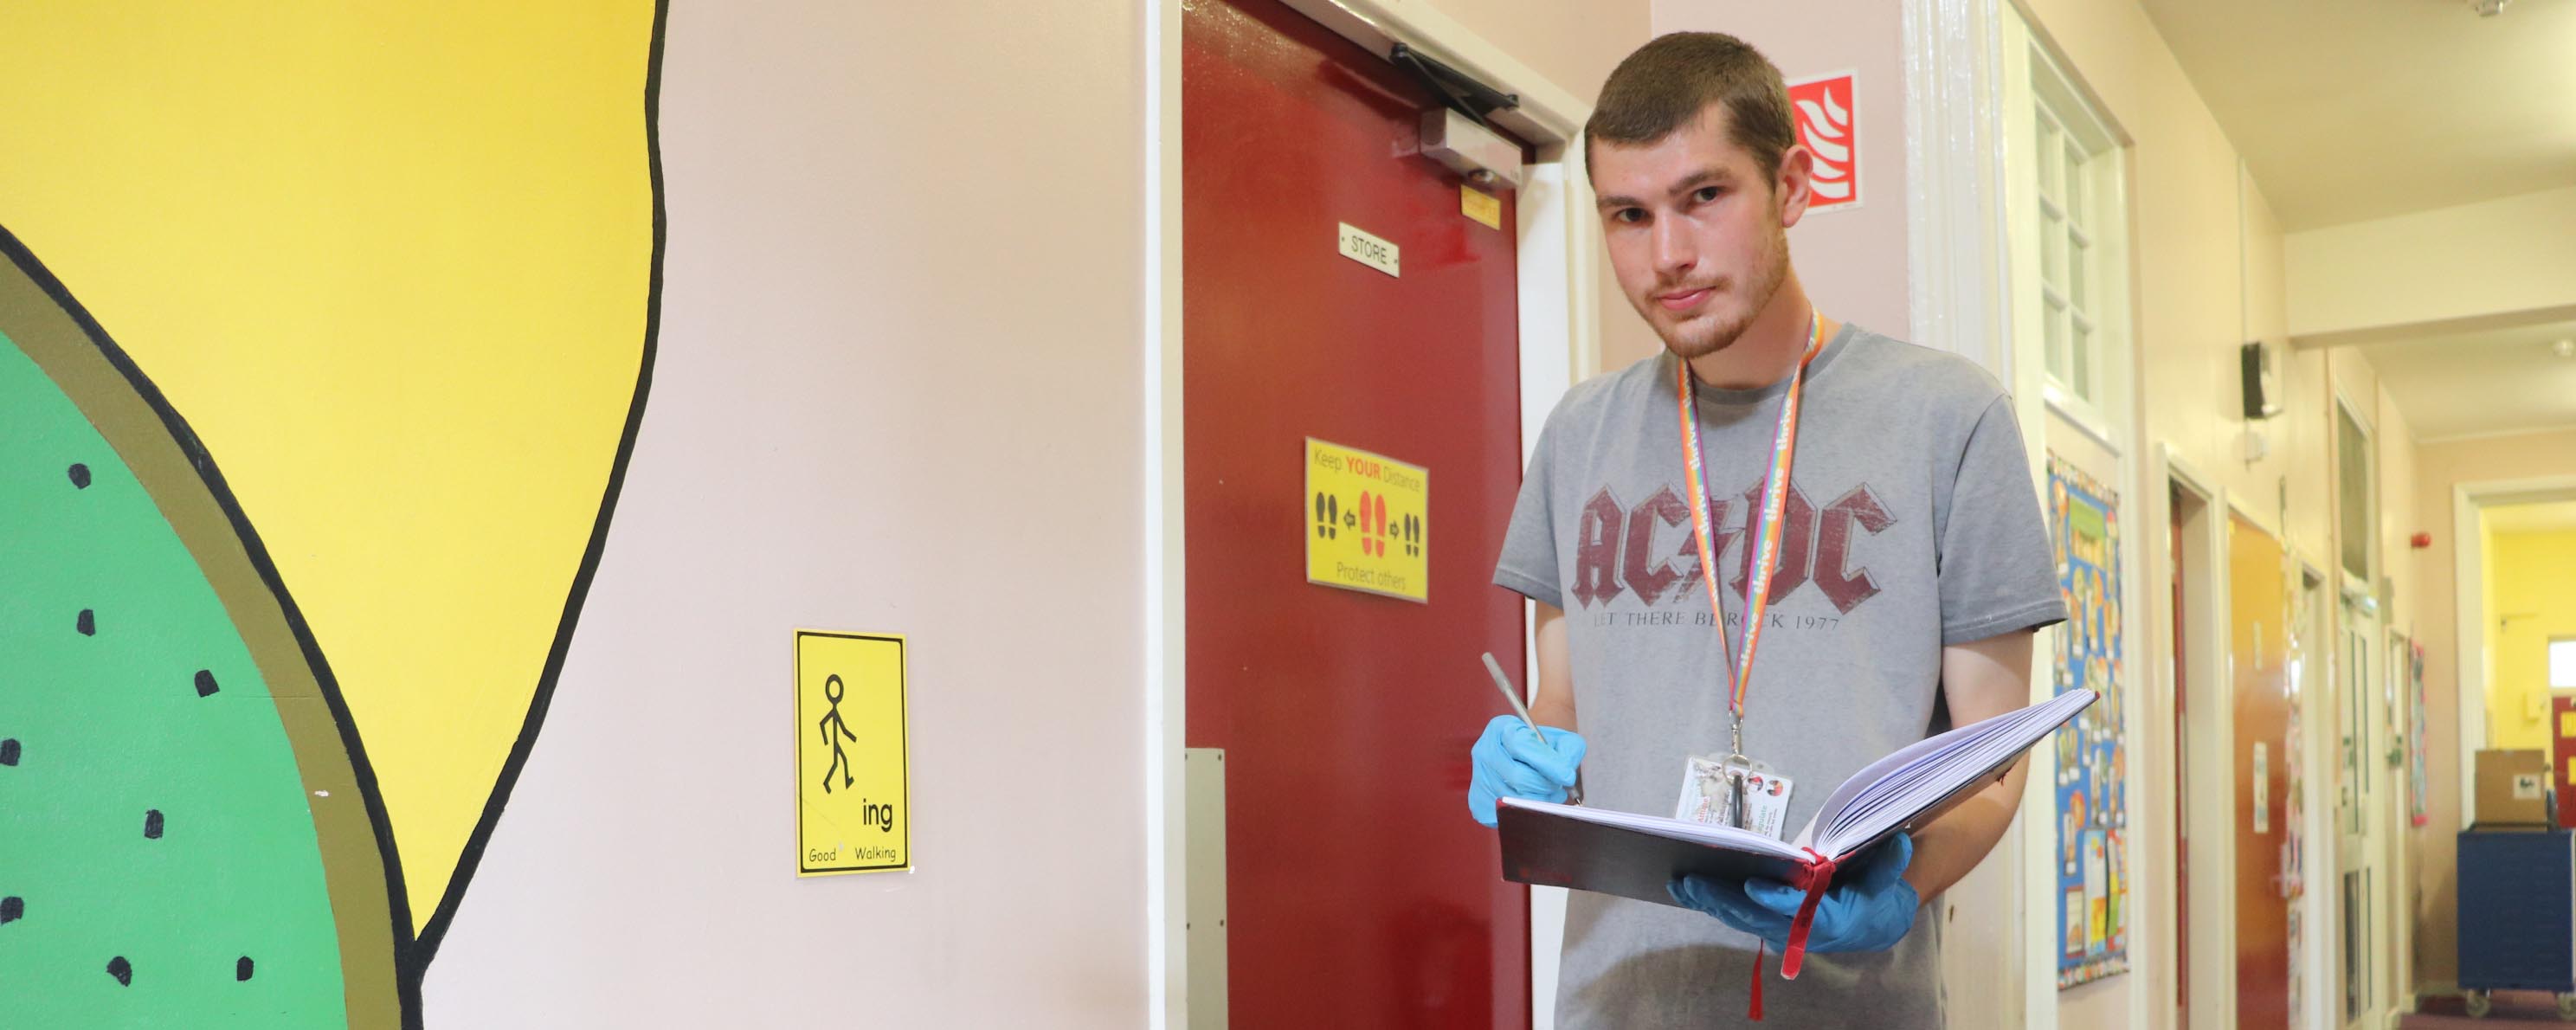 male facilities apprentice in school corridor facing